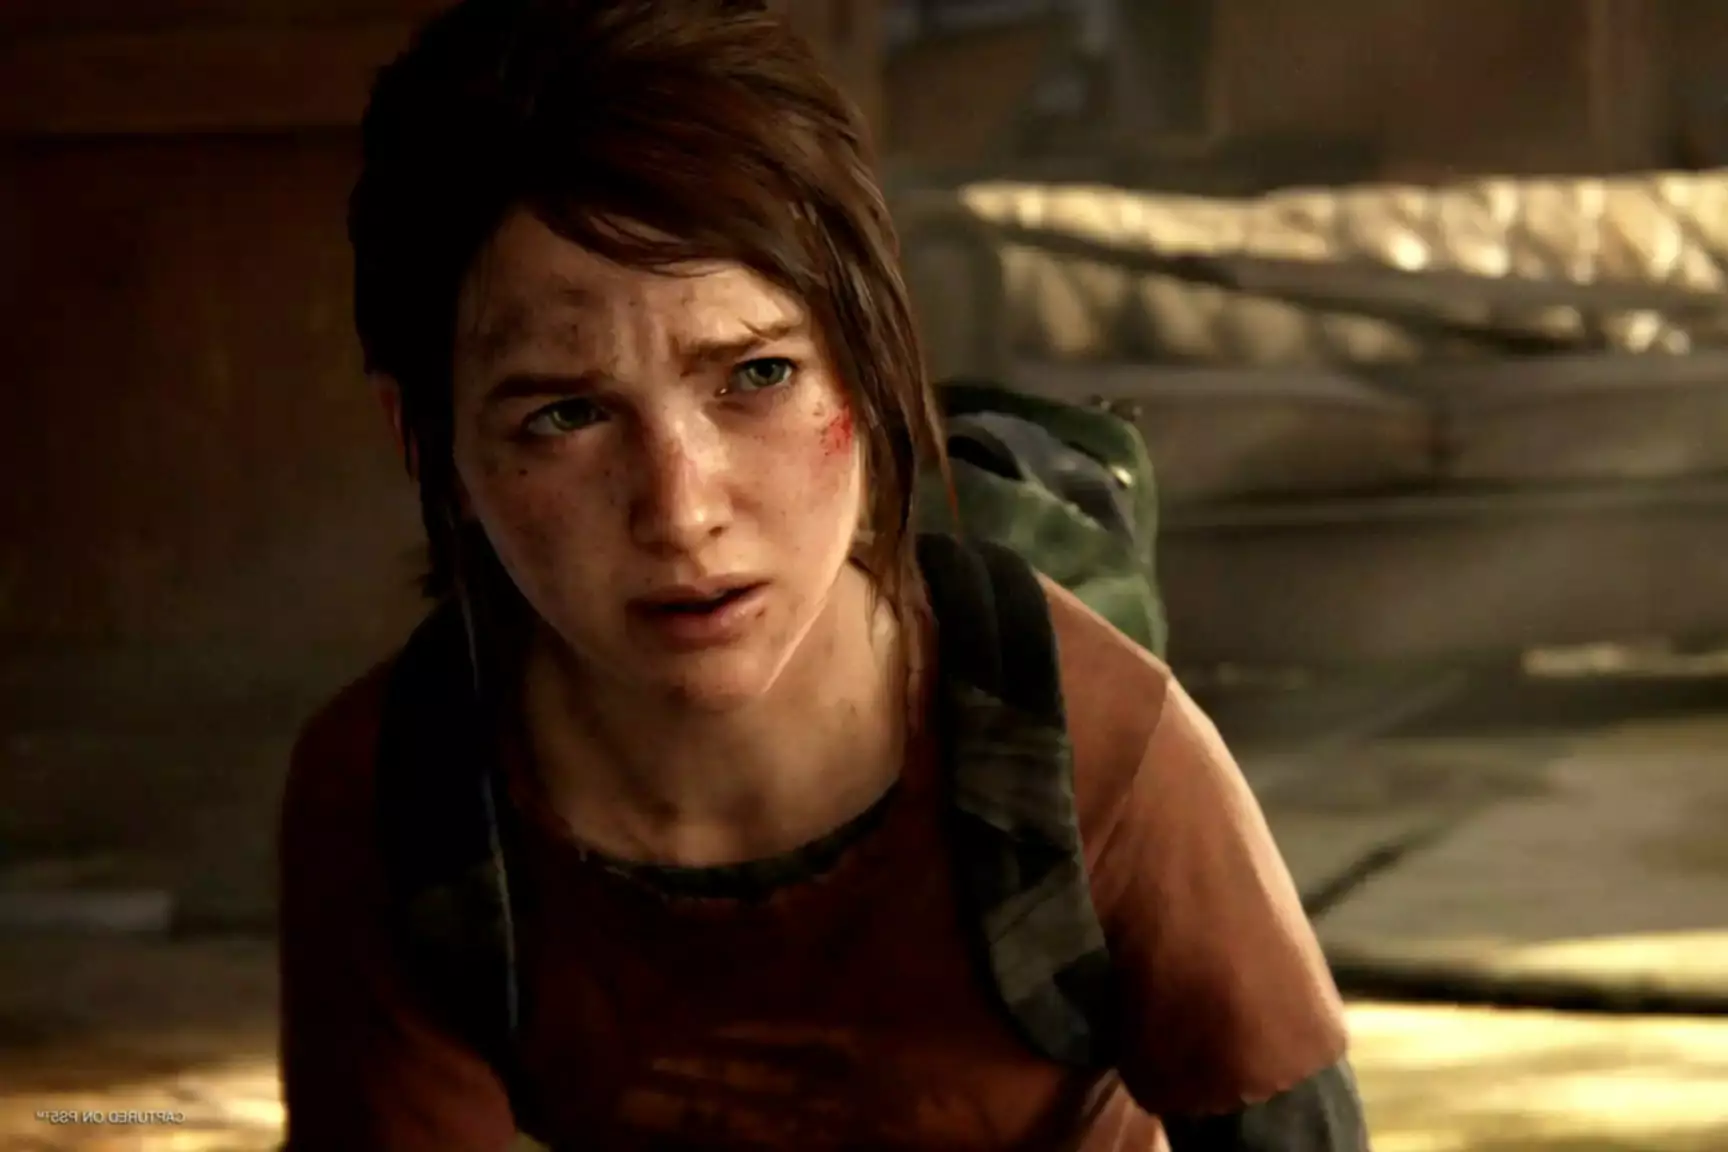 Screenshot z The Last of Us Part 1 Remastered s postavou s řeznými ranami a modřinami, která vypadá vyděšeně